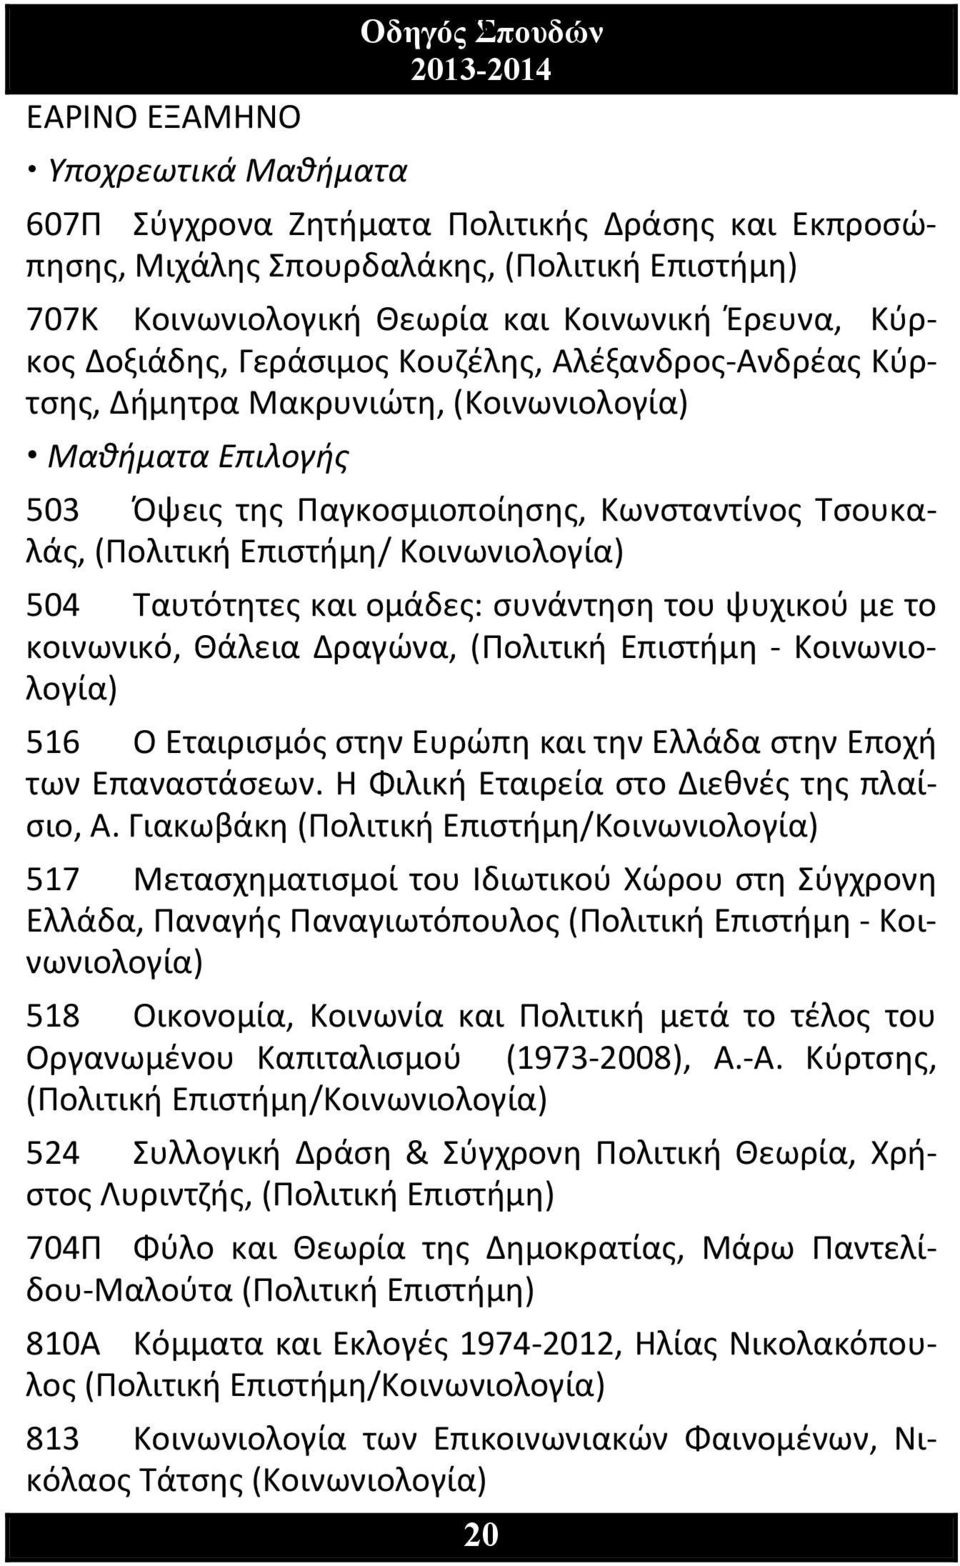 Επιστήμη/ Κοινωνιολογία) 504 Ταυτότητες και ομάδες: συνάντηση του ψυχικού με το κοινωνικό, Θάλεια Δραγώνα, (Πολιτική Επιστήμη Κοινωνιολογία) 516 Ο Εταιρισμός στην Ευρώπη και την Ελλάδα στην Εποχή των